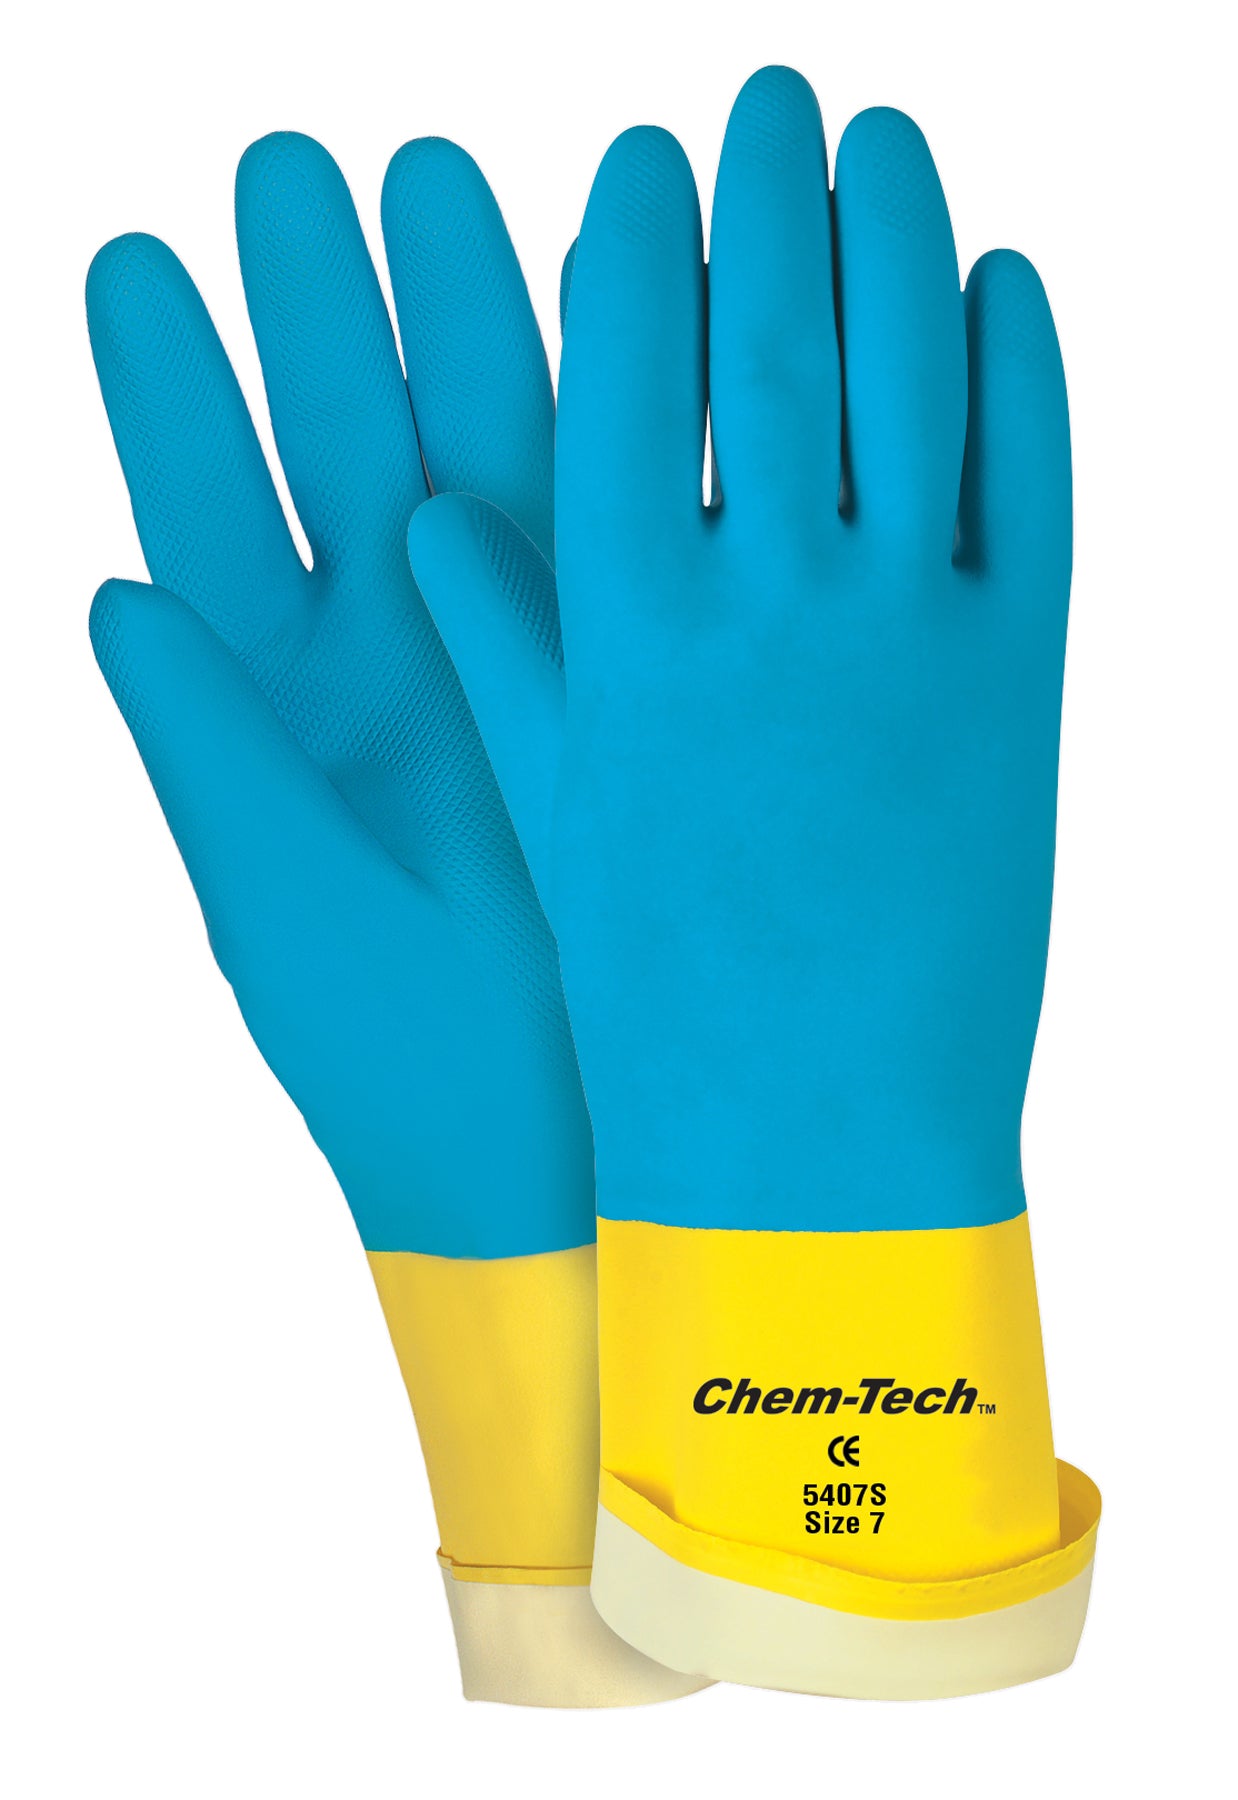 5407S - ChemTech™ Neoprene over Latex Gloves